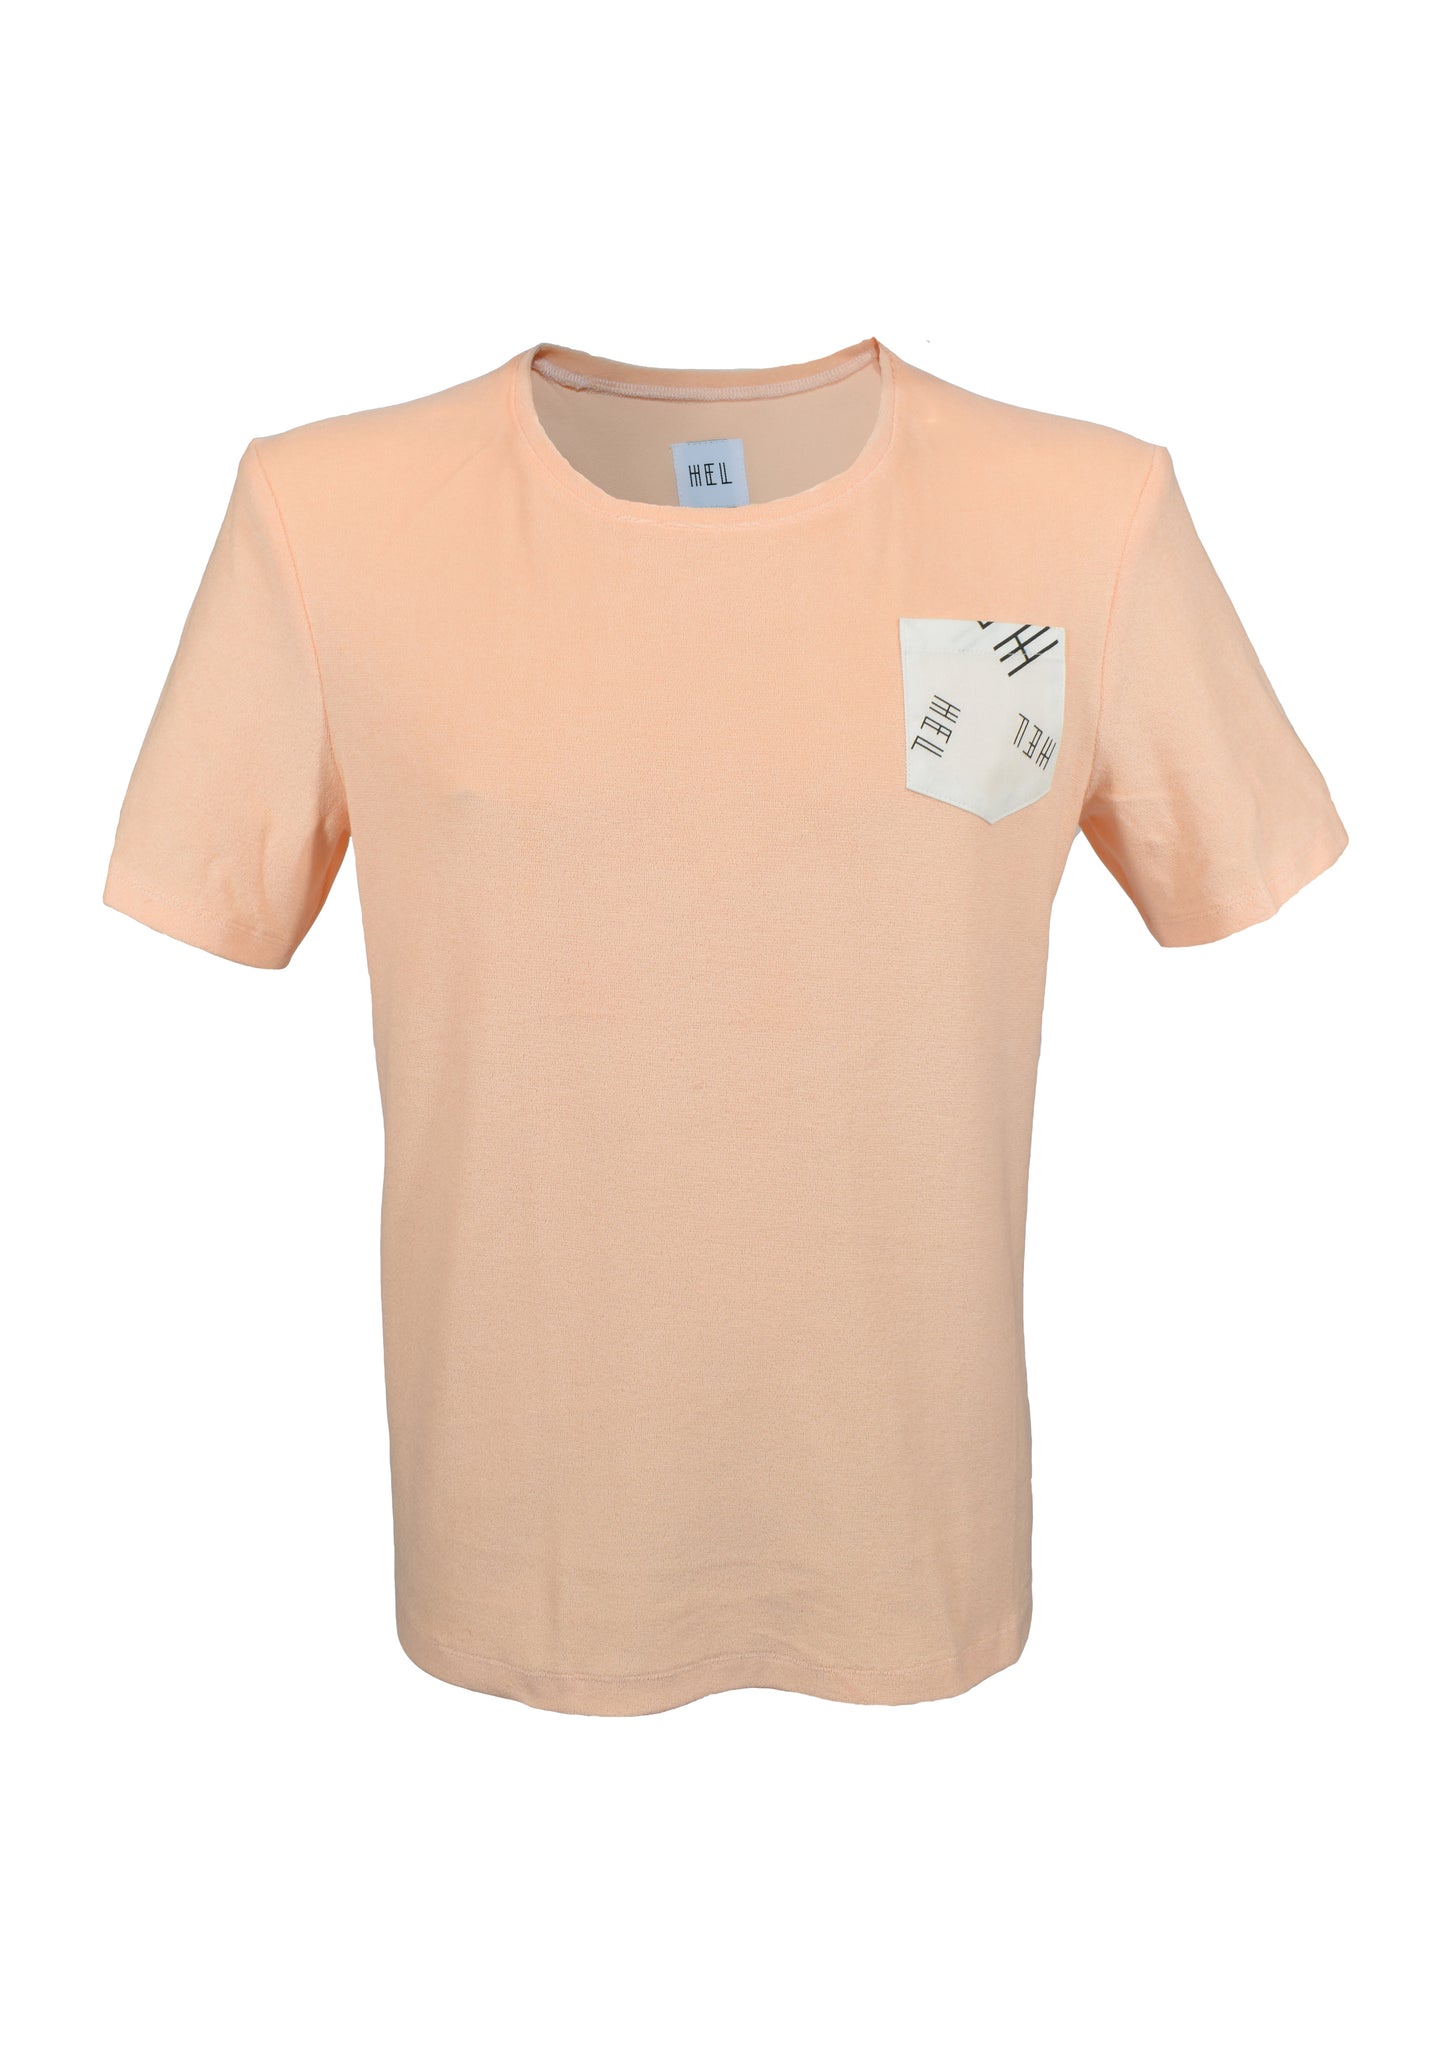 HEL Unisex T-Shirt aus Frottee mit Brusttasche in Apricot